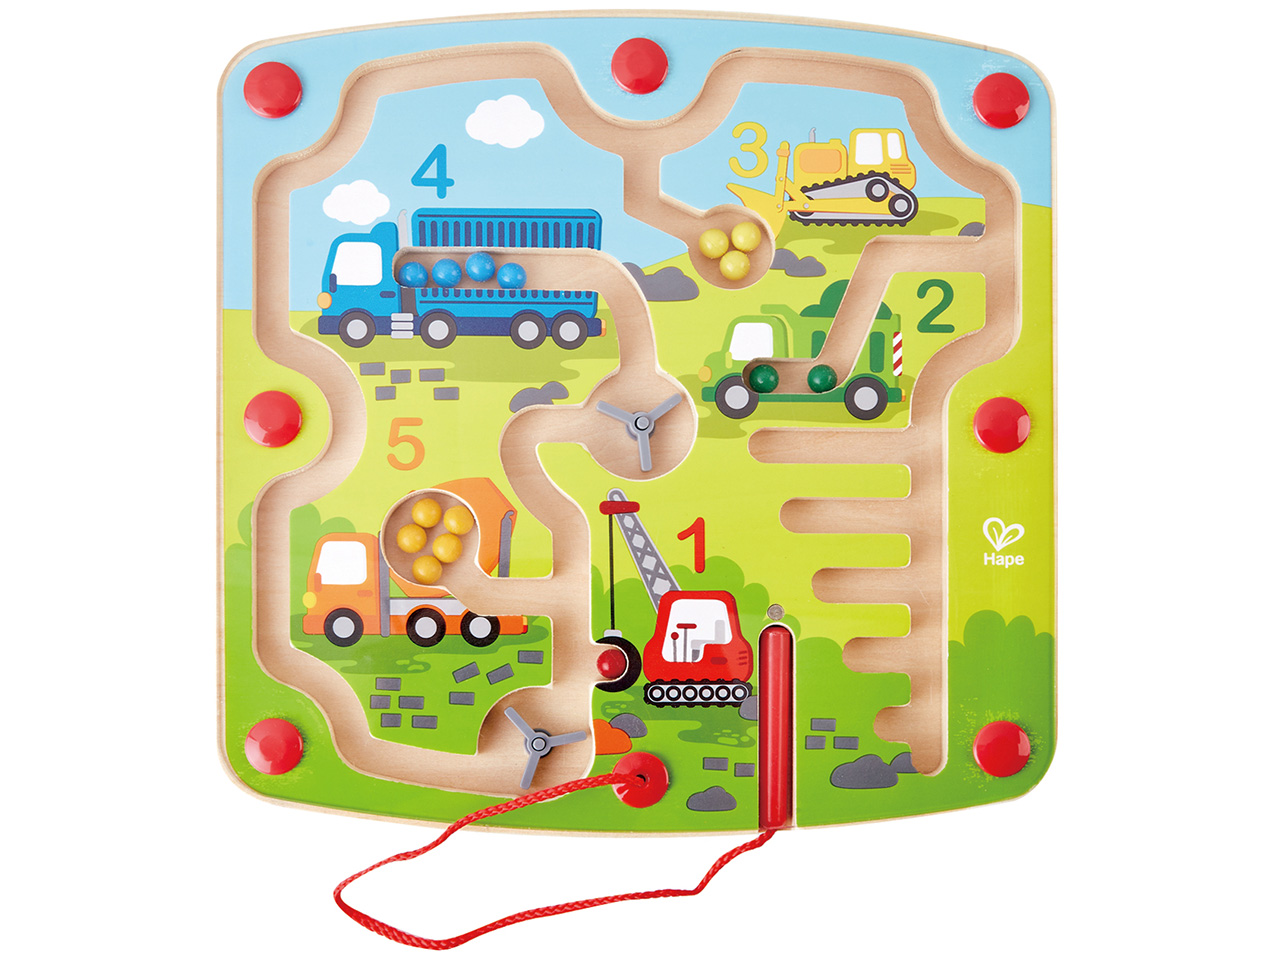 oathx Magnetspiel Labyrinth Spiel ab 2,Montessori Magnet Spielzeug